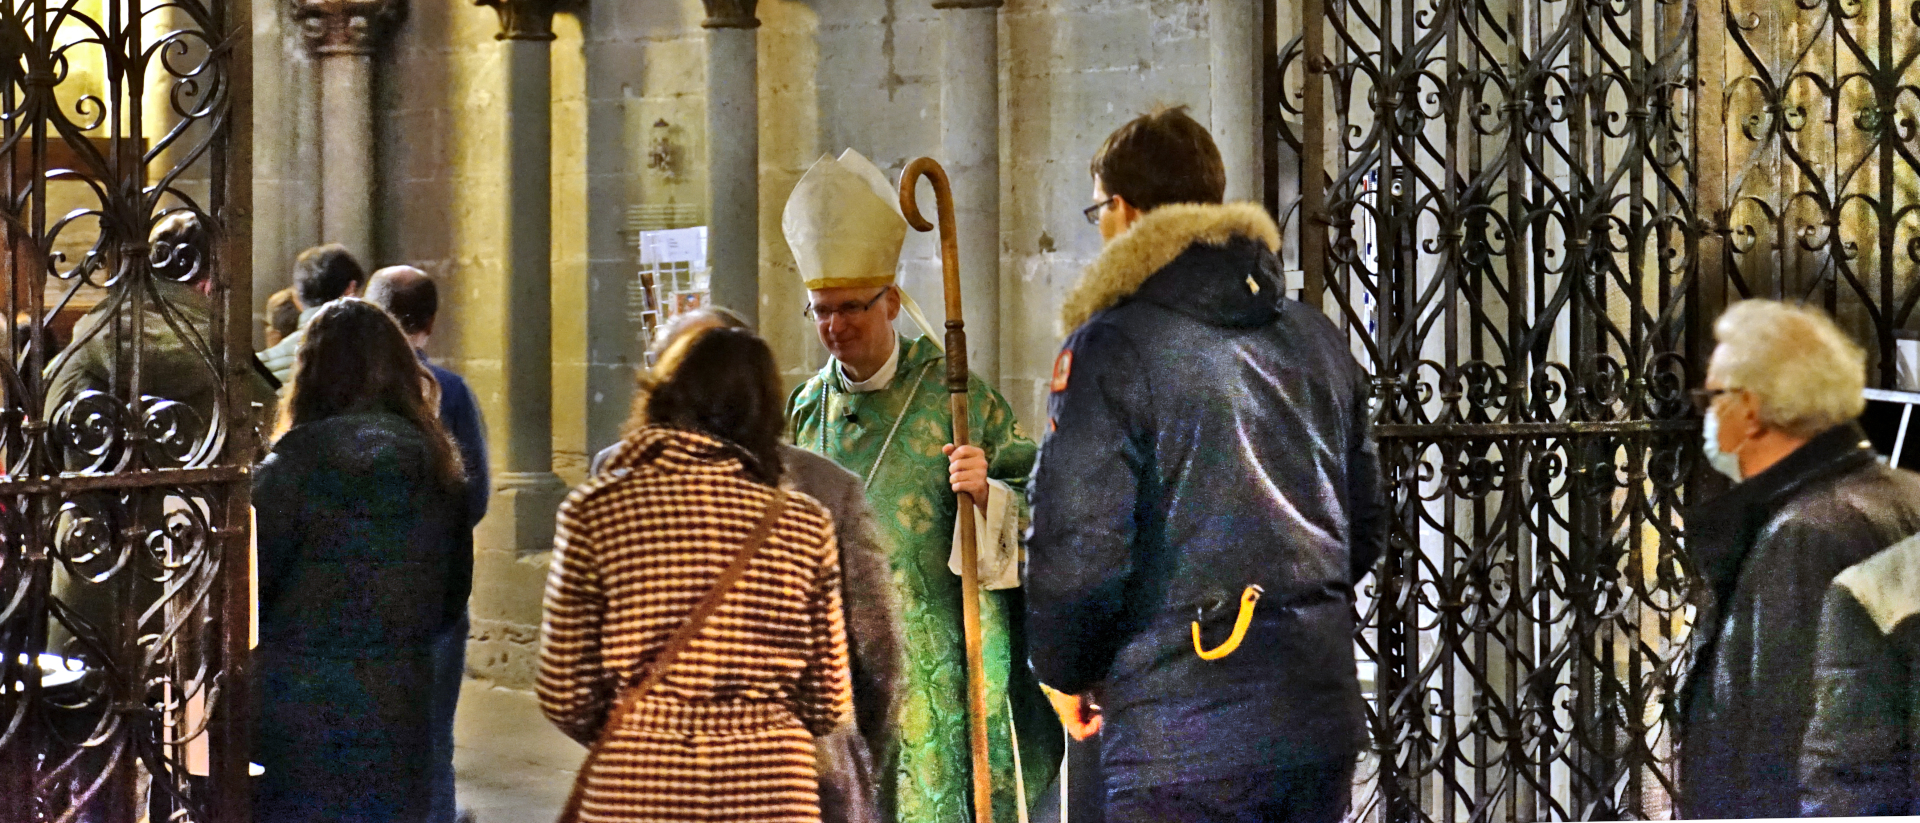 Bischof Morerod verabschiedet sich in der Kathedrale Freiburg von den Gläubigen | © Georges Scherrer